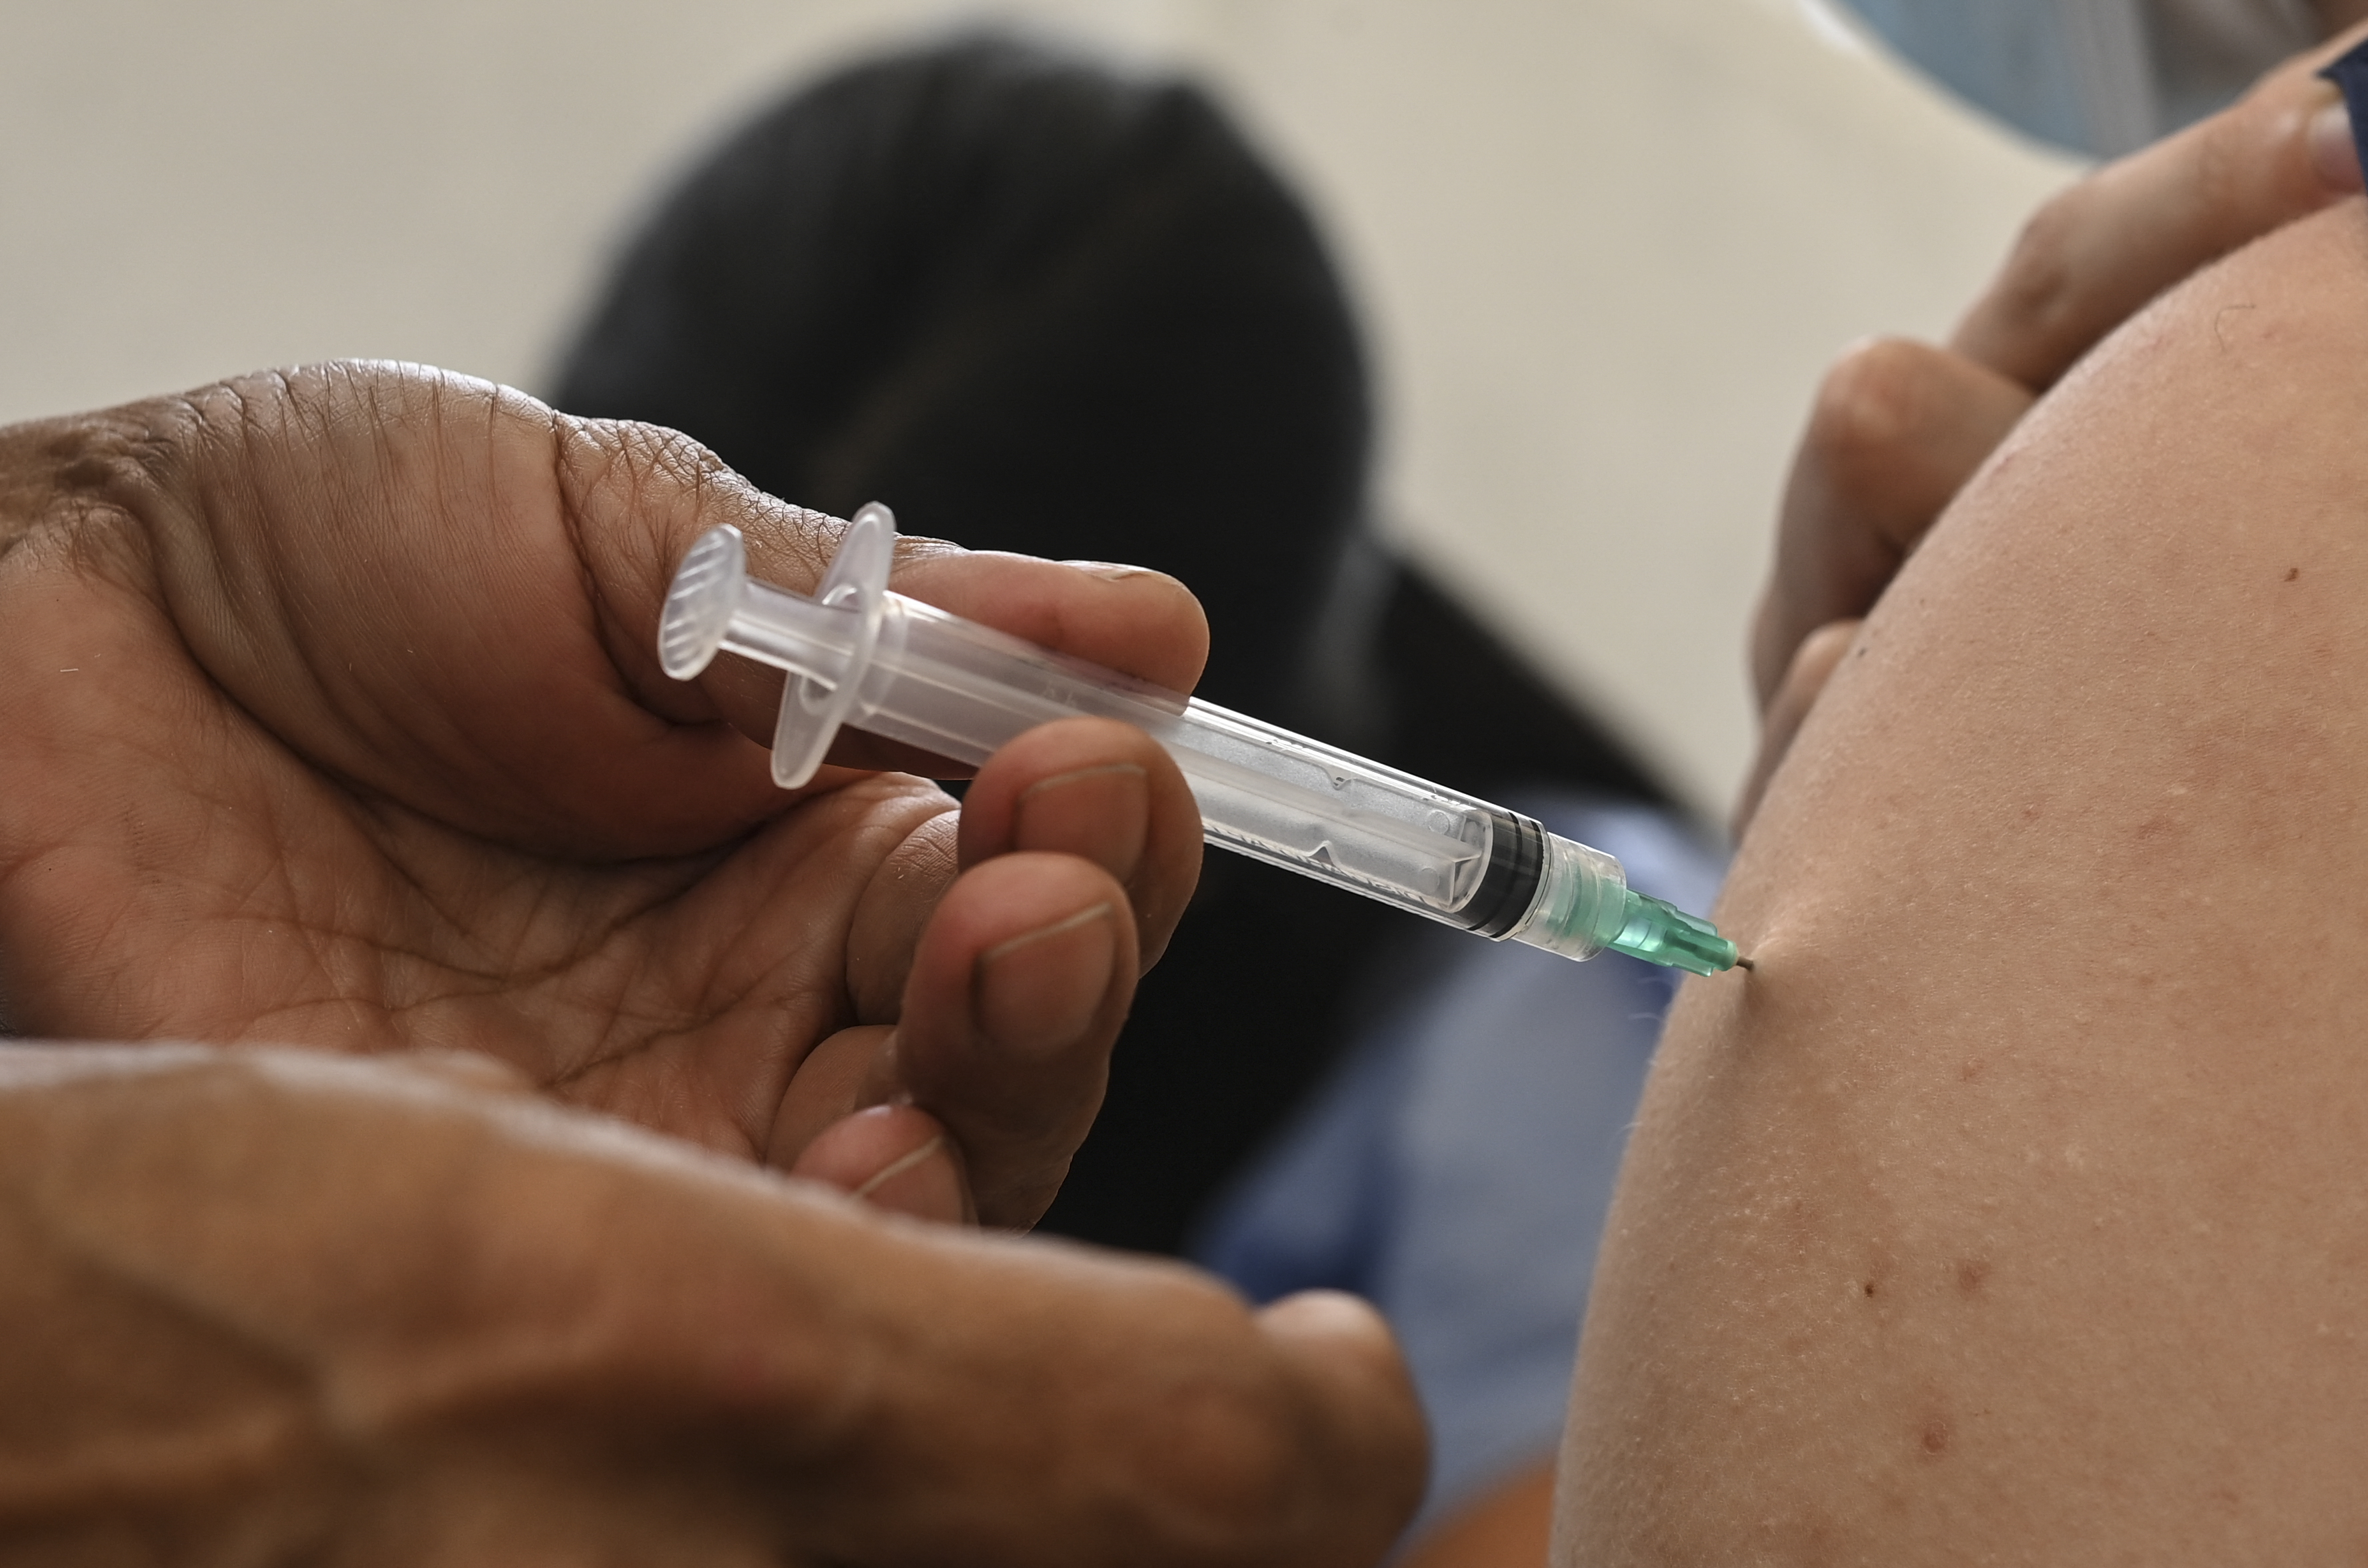  (A decisão acelera o processo de imunização em cidades que têm pouca demanda dos grupos prioritários estipulados pelo Plano Nacional de Operacionalização da Vacinação contra Covid-19. Foto: Yuri CORTEZ / AFP)